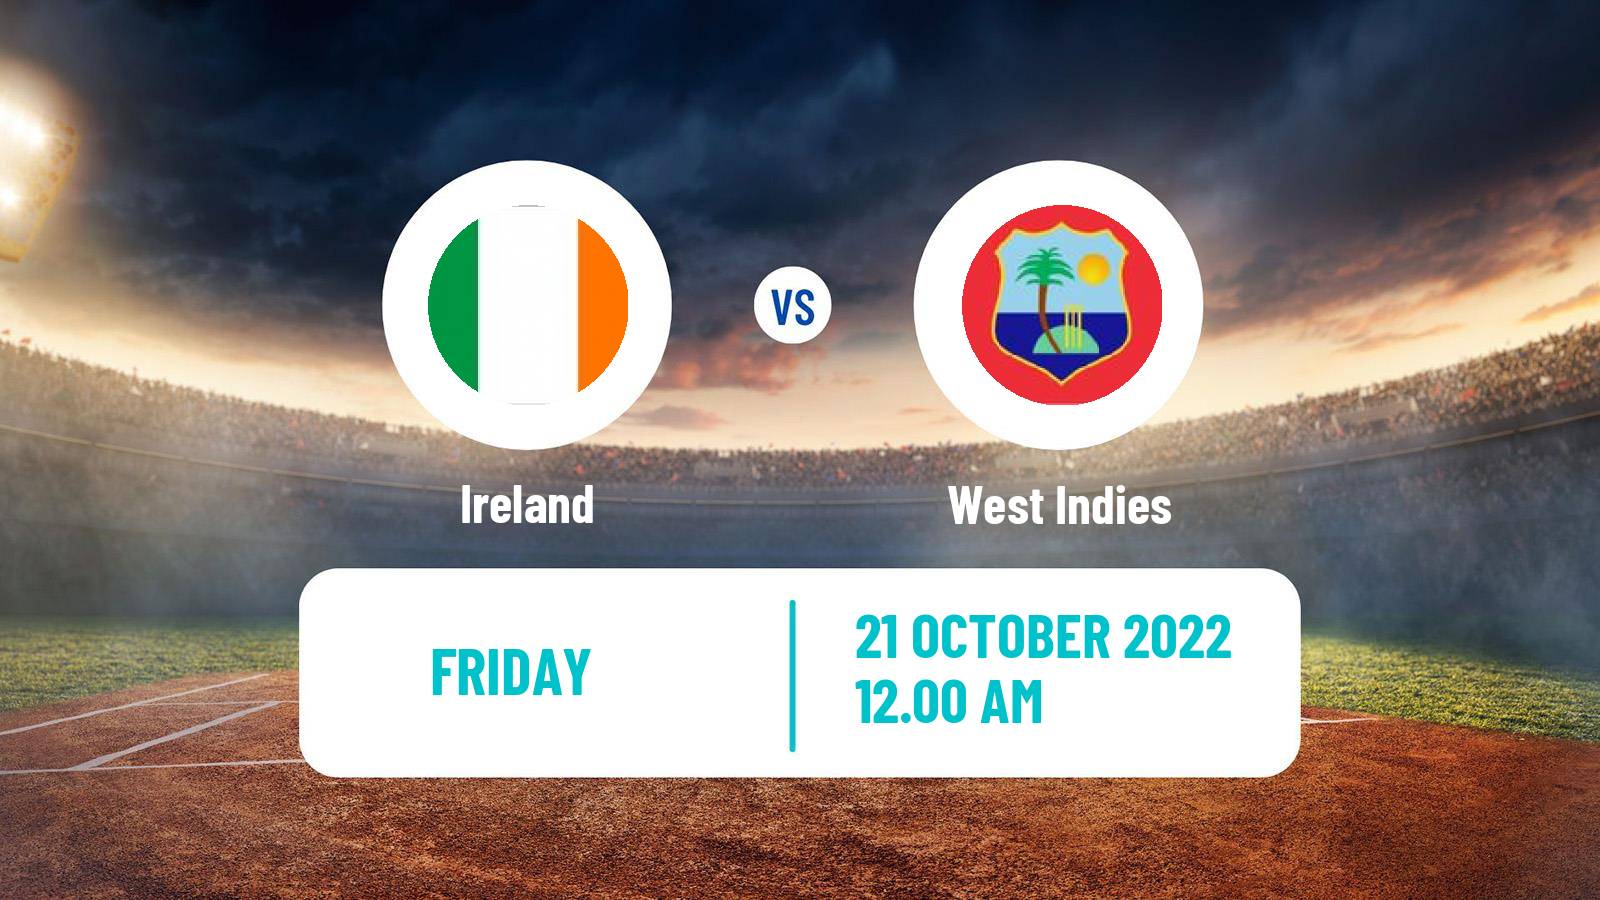 Cricket ICC World Twenty20 Ireland - West Indies